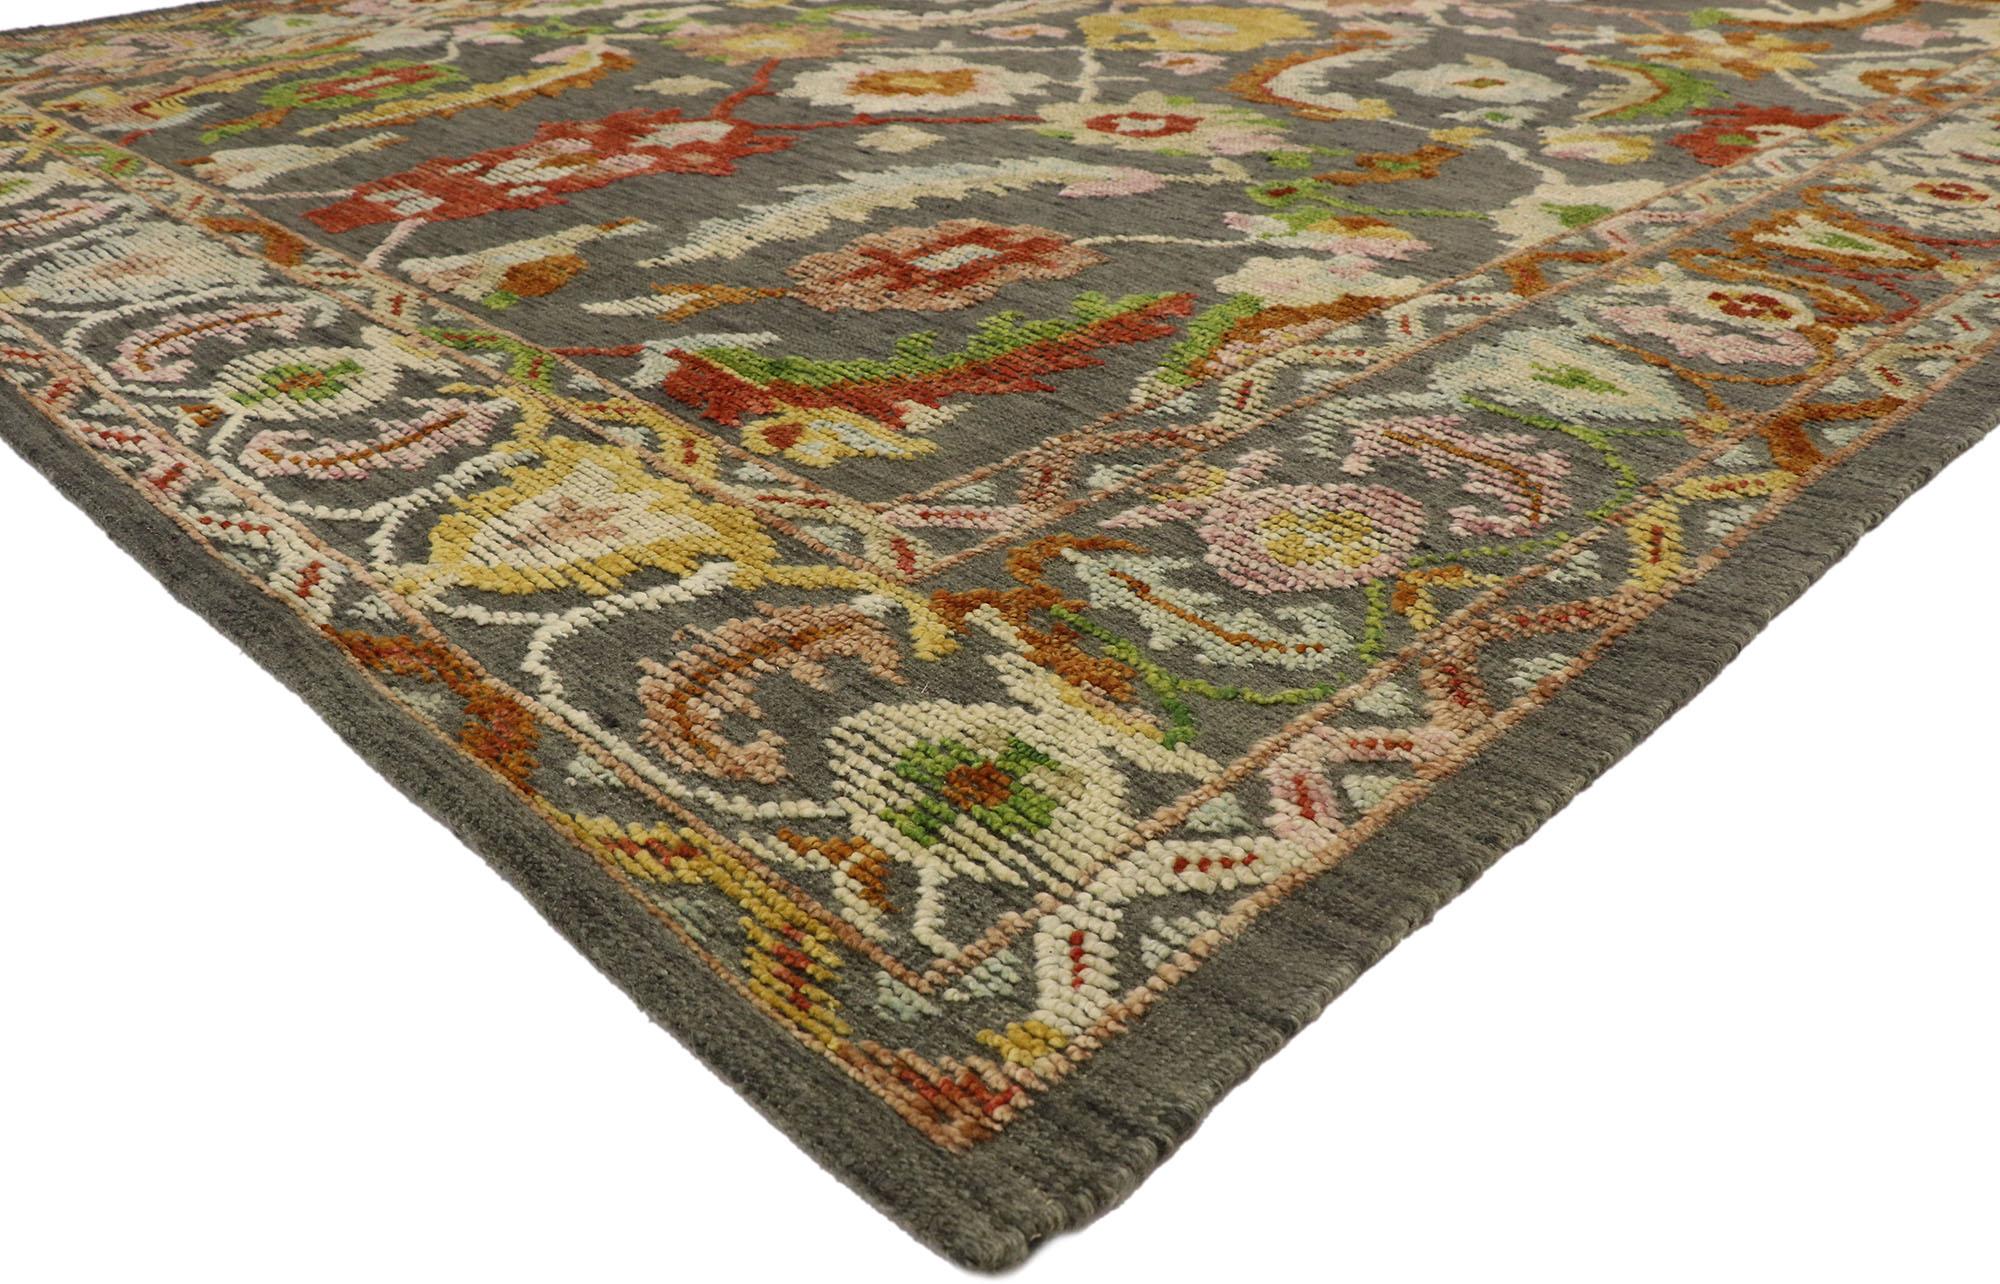 30518 New Oushak High-Low-Teppich, 10'09 x 13'01. Mit seinem erhabenen Muster mit unglaublichen Details und Texturen ist dieser Oushak-Teppich eine fesselnde Vision gewebter Schönheit. Das geometrische Muster und die erdige Farbgebung, die in dieses